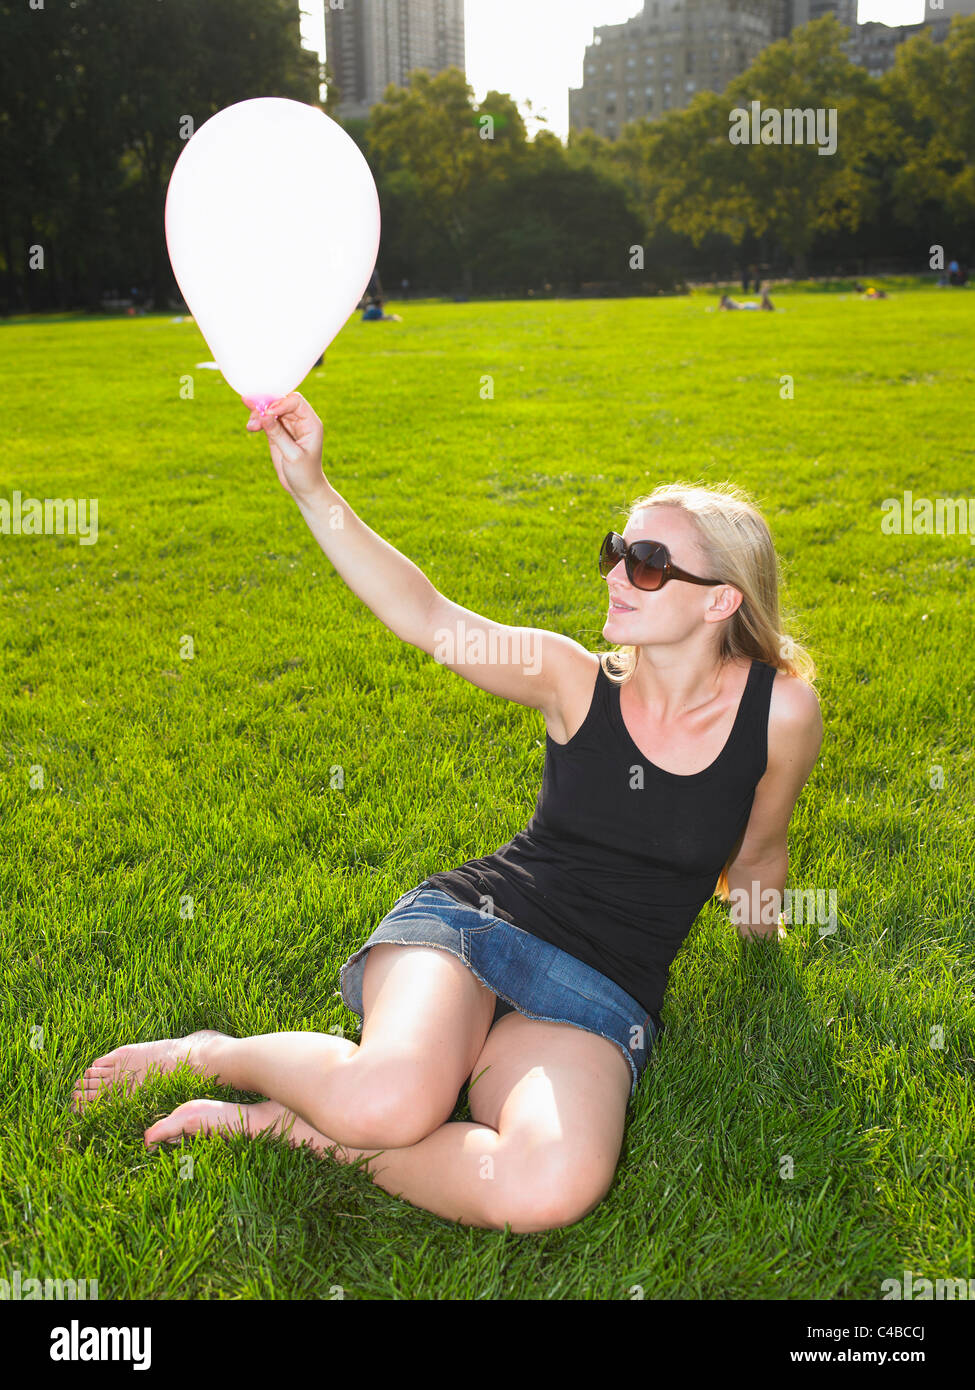 Femme jouant avec un ballon dans un parc Banque D'Images